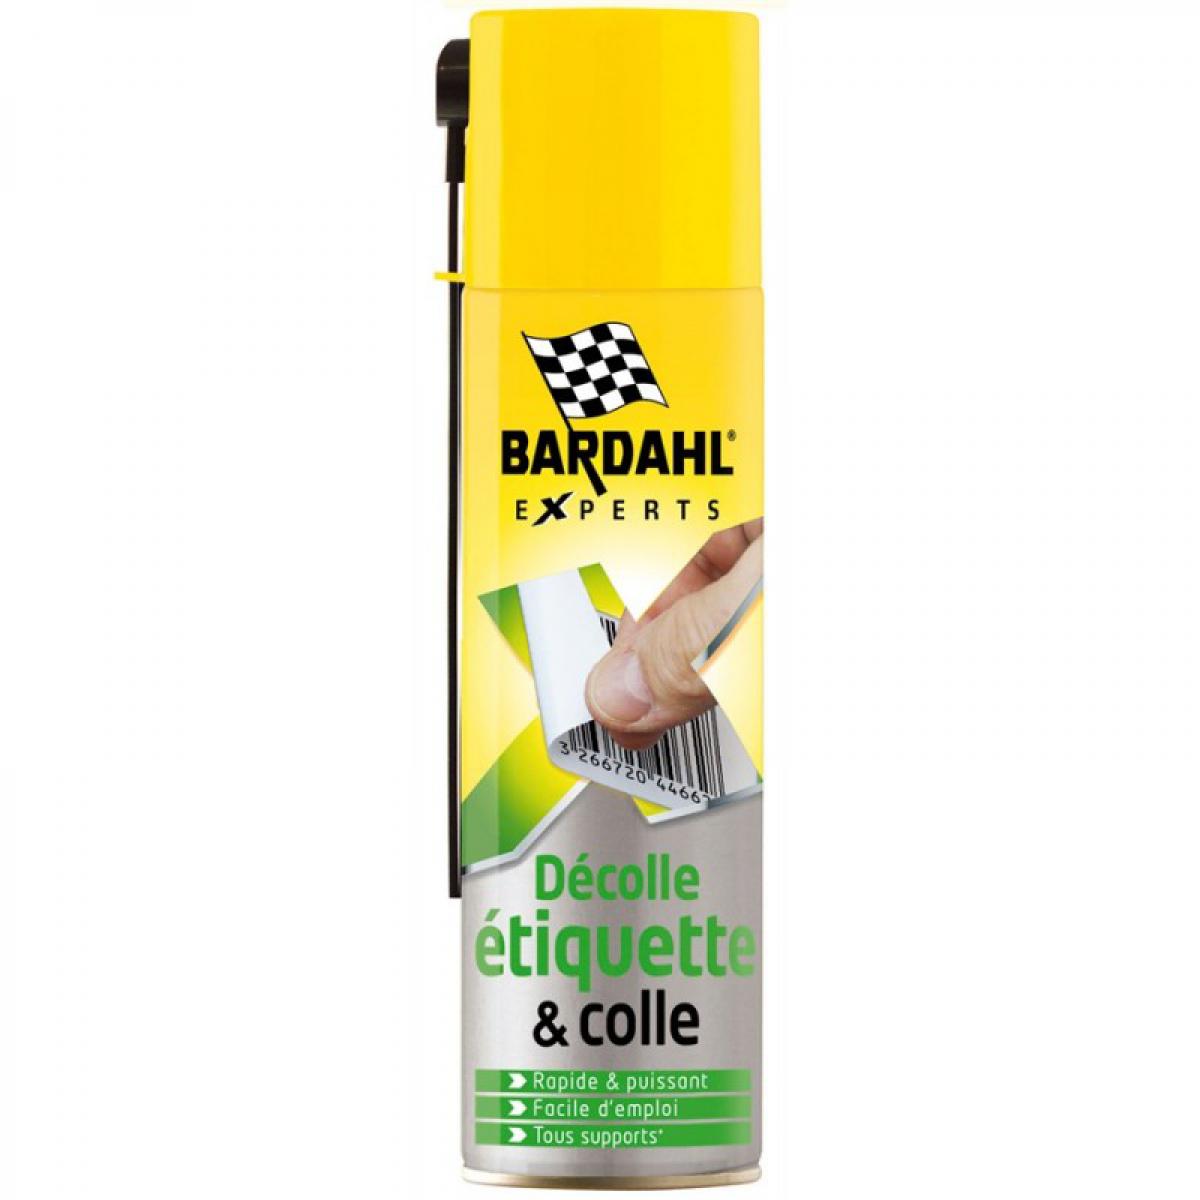 Bardahl - Décolle étiquette Bardahl 250ml - Colle & adhésif